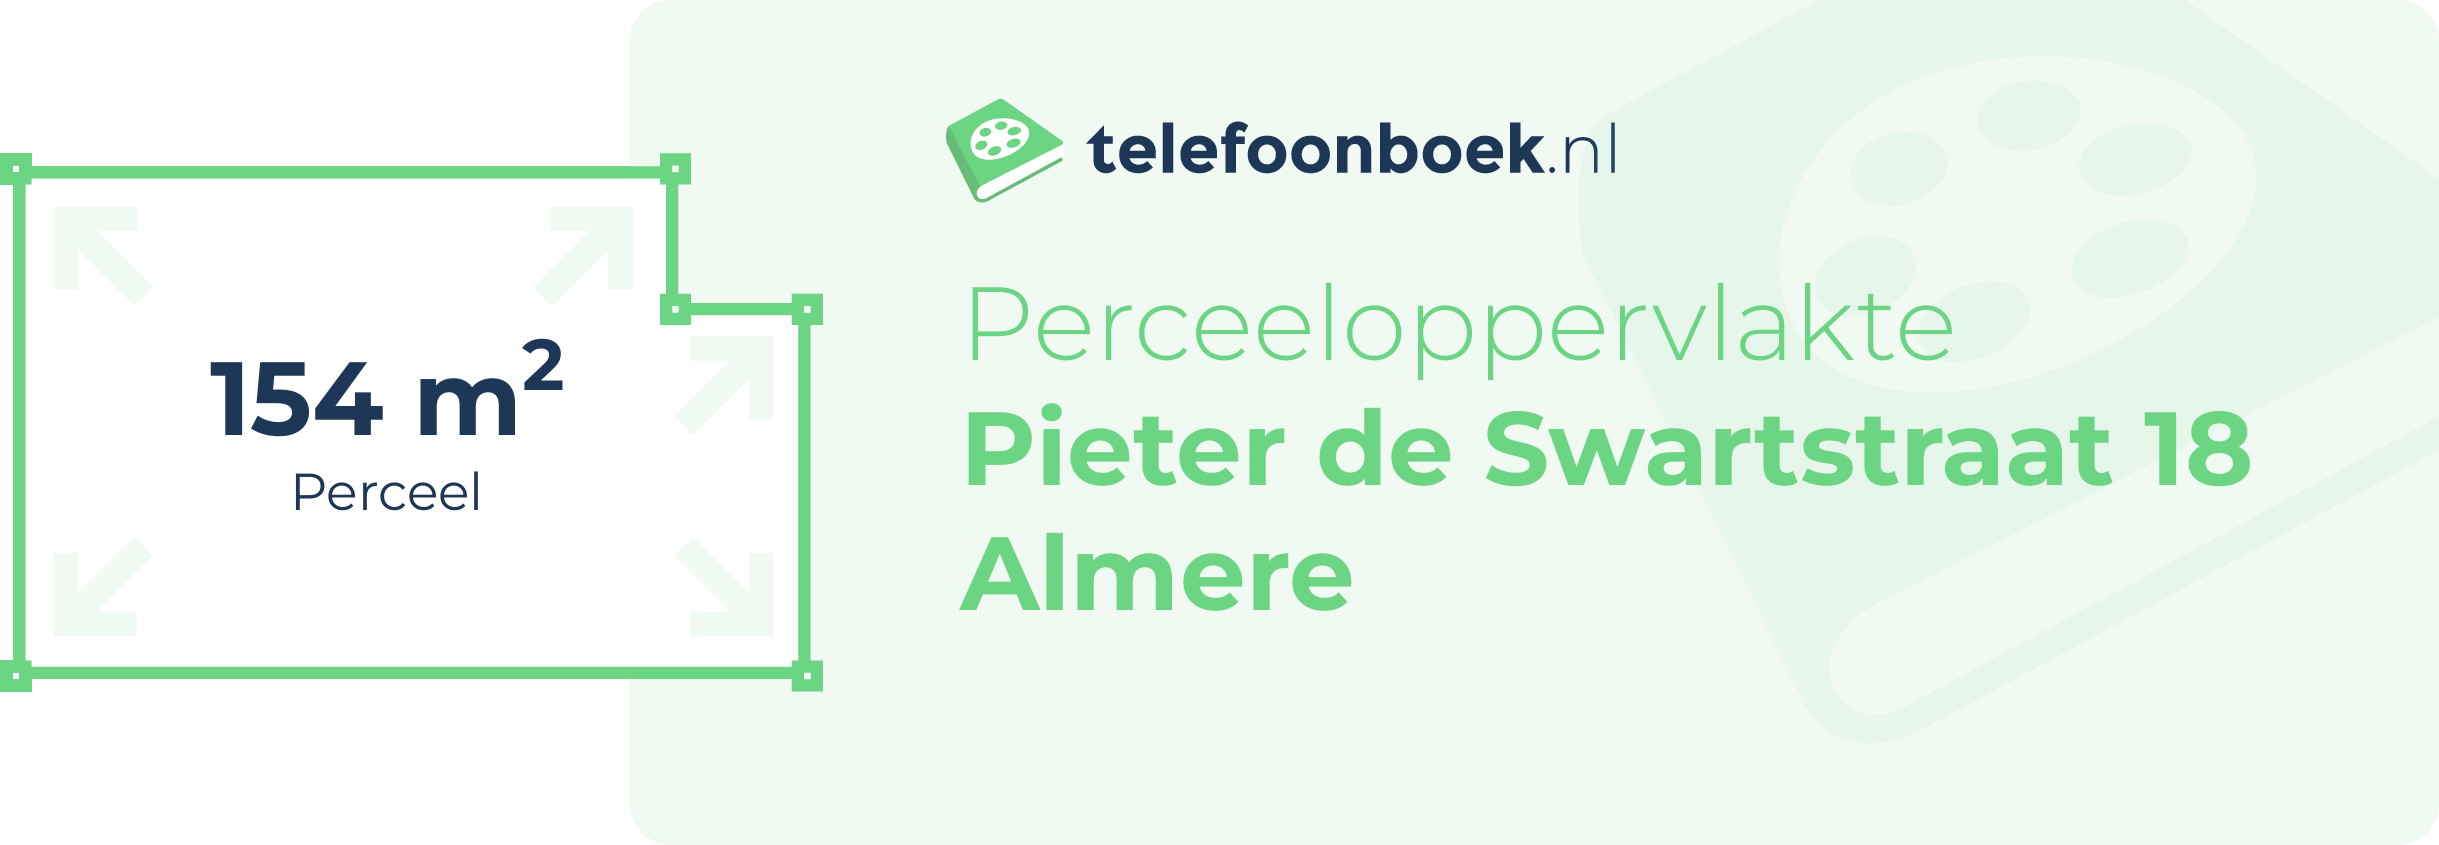 Perceeloppervlakte Pieter De Swartstraat 18 Almere